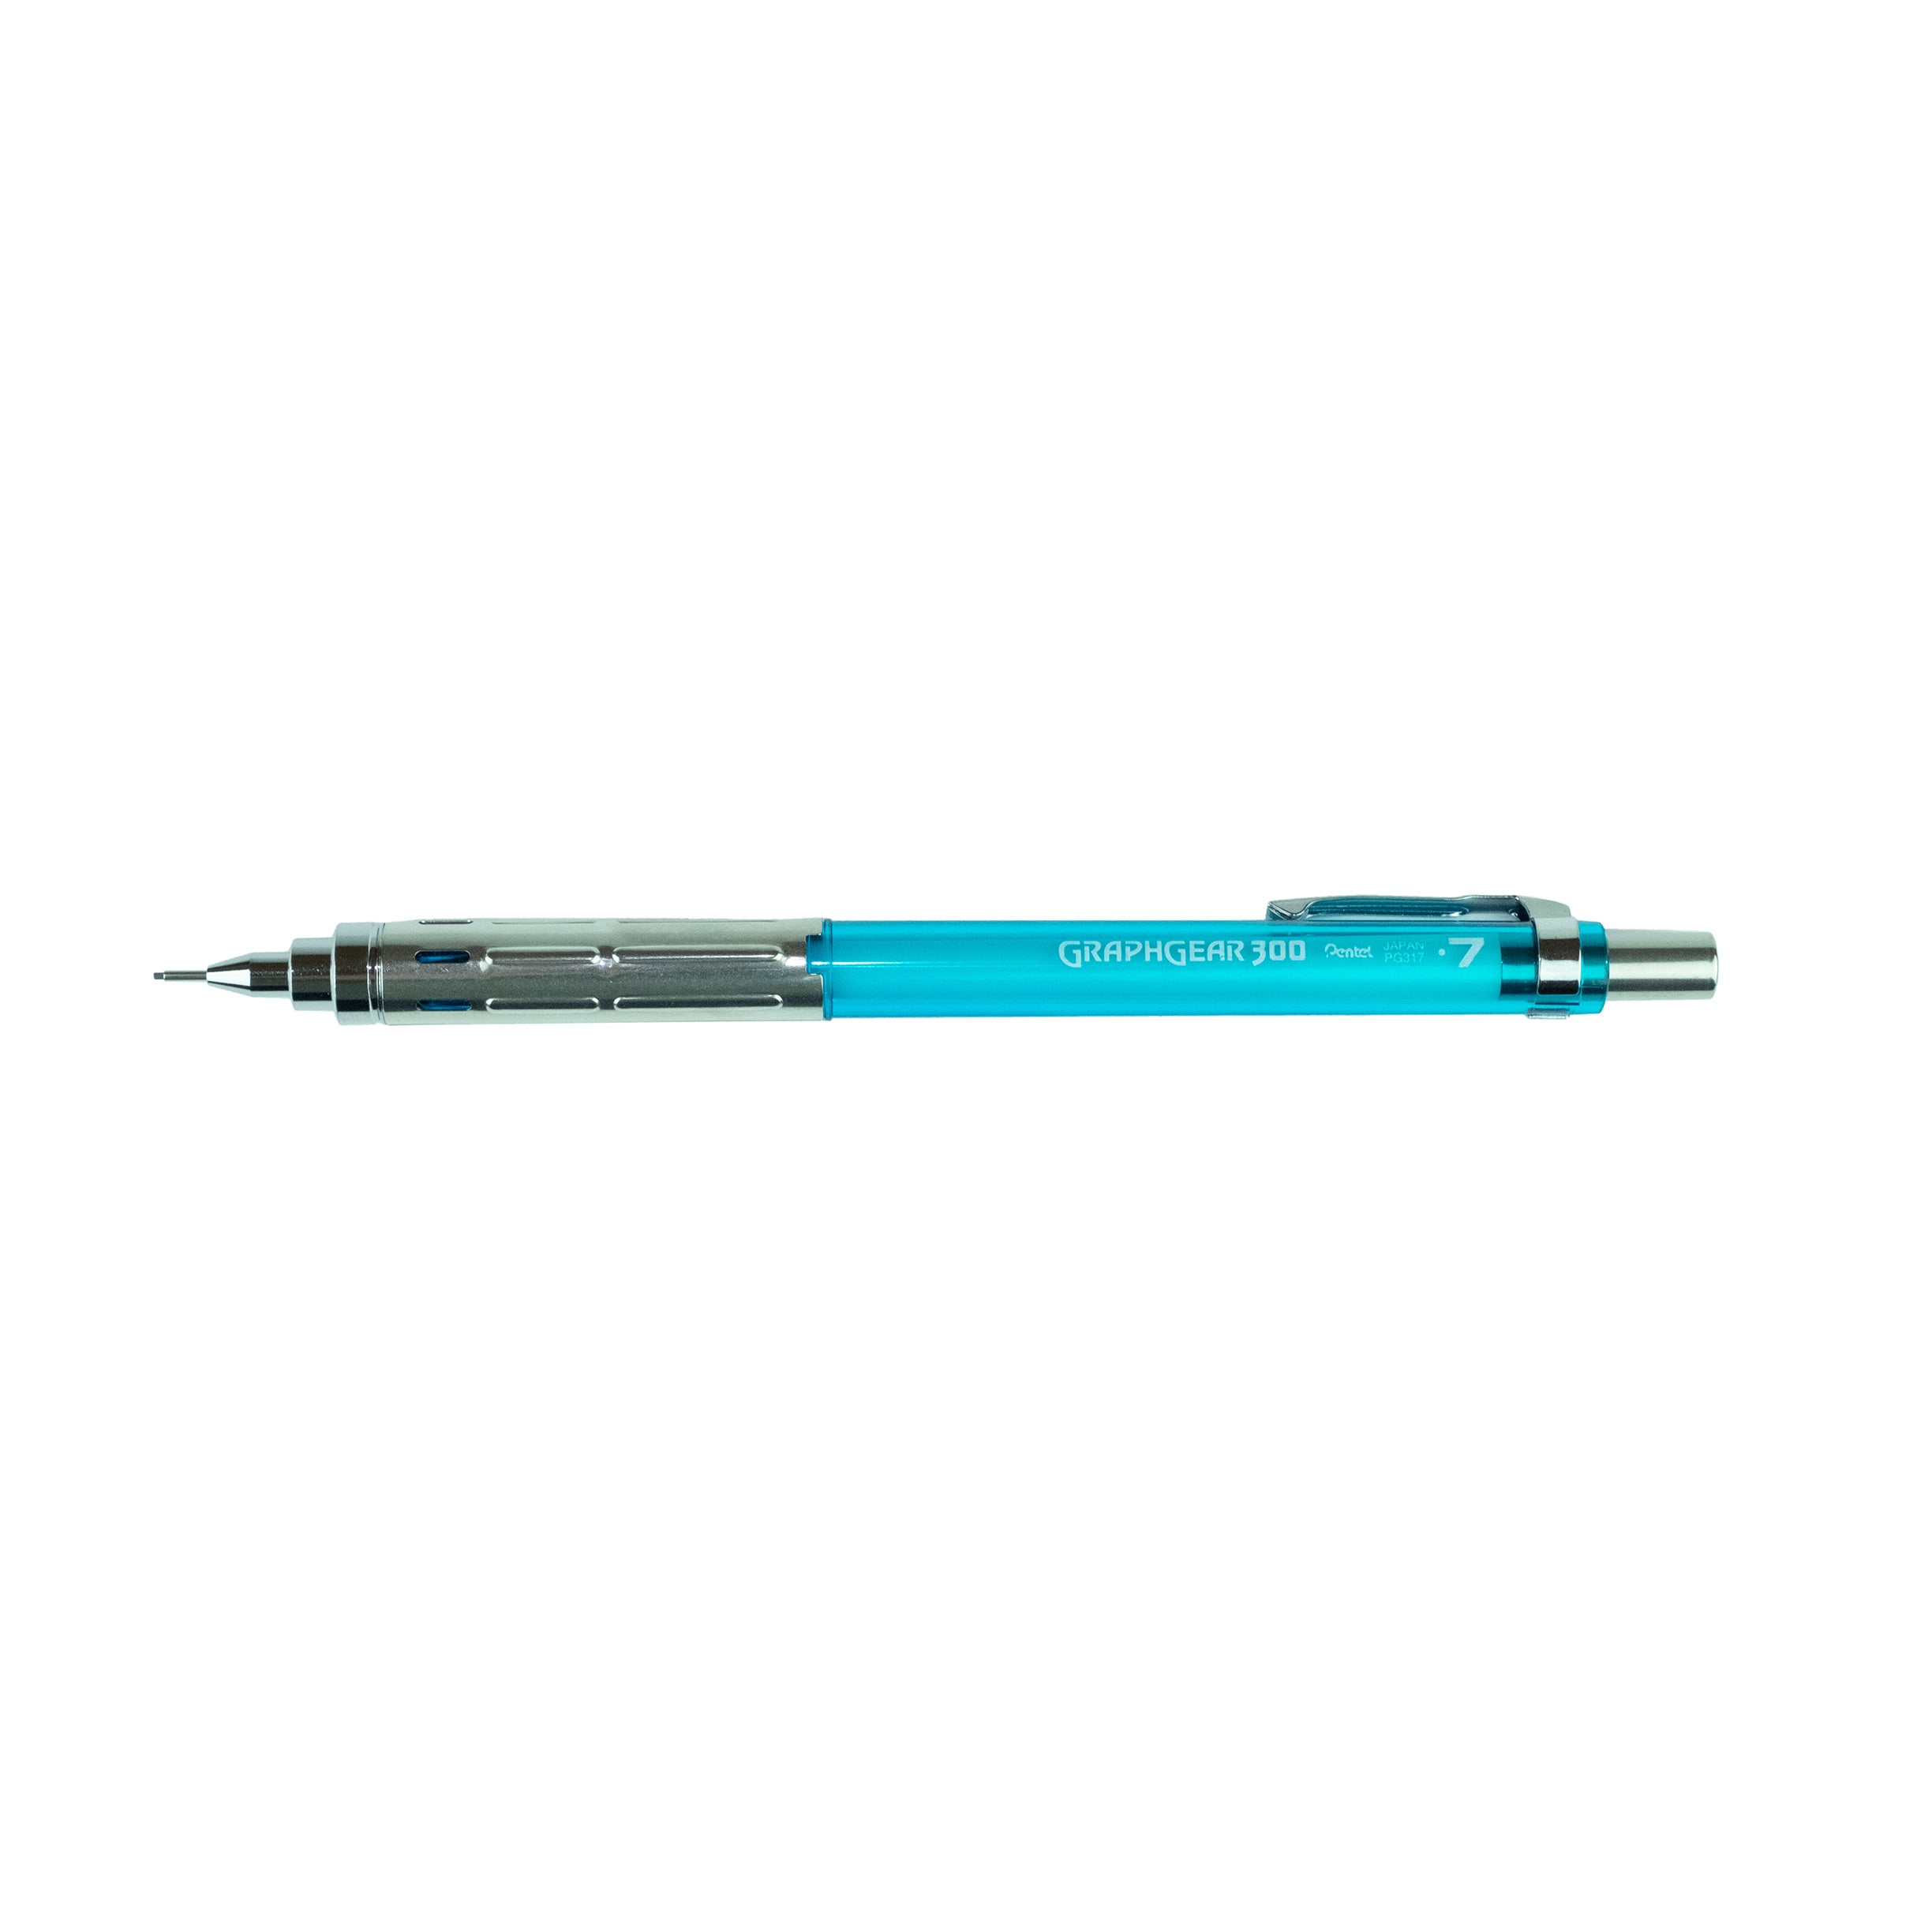 Pentel GraphGear 300 Mechanical Pencil, 0.7mm